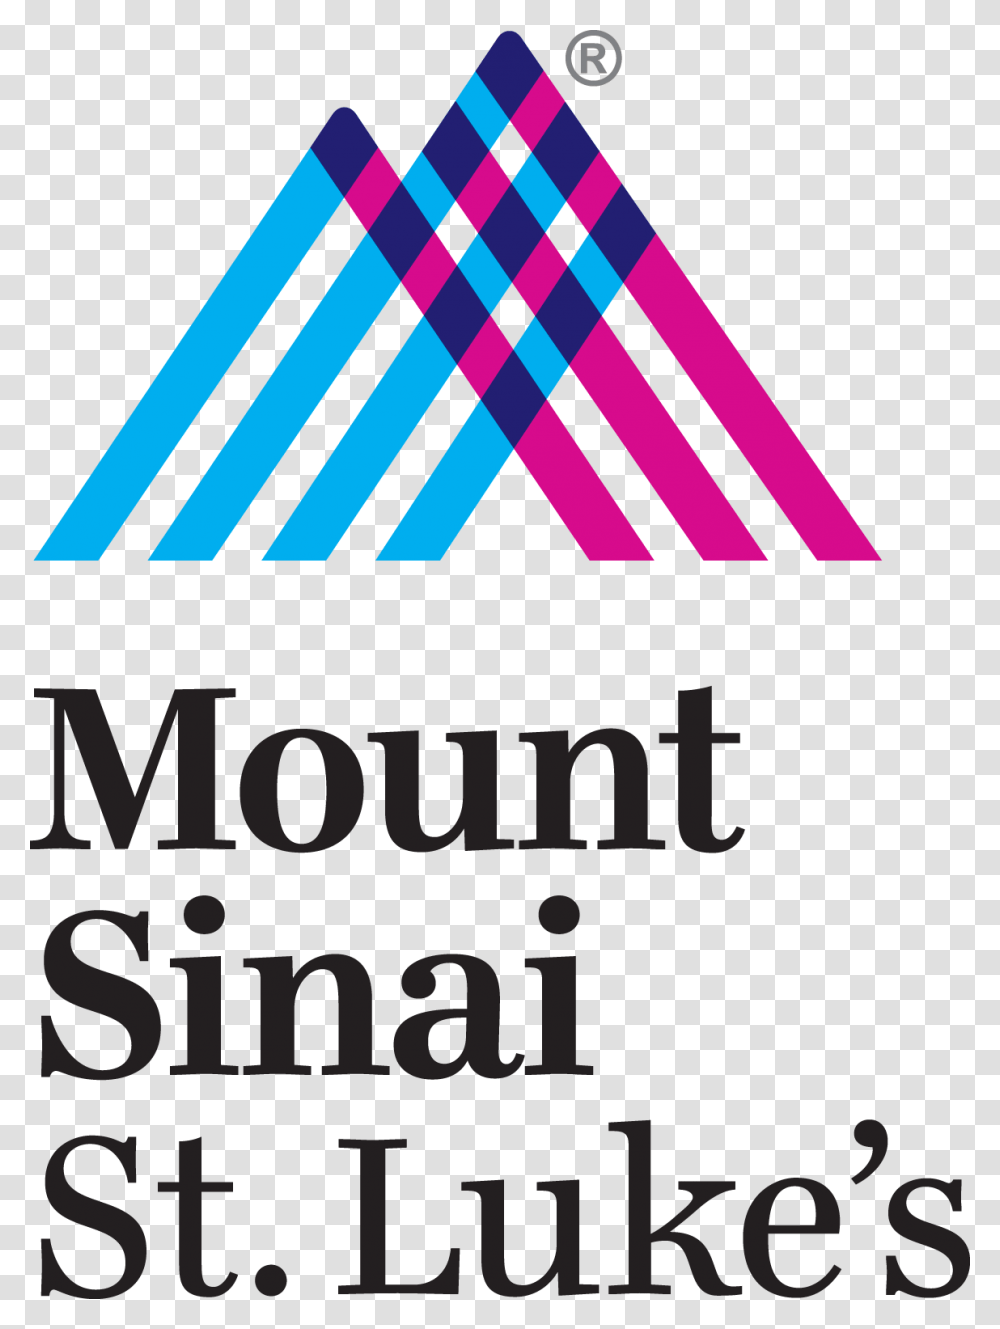 Mount Sinai St Luke's Logo, Trademark, Poster, Advertisement Transparent Png